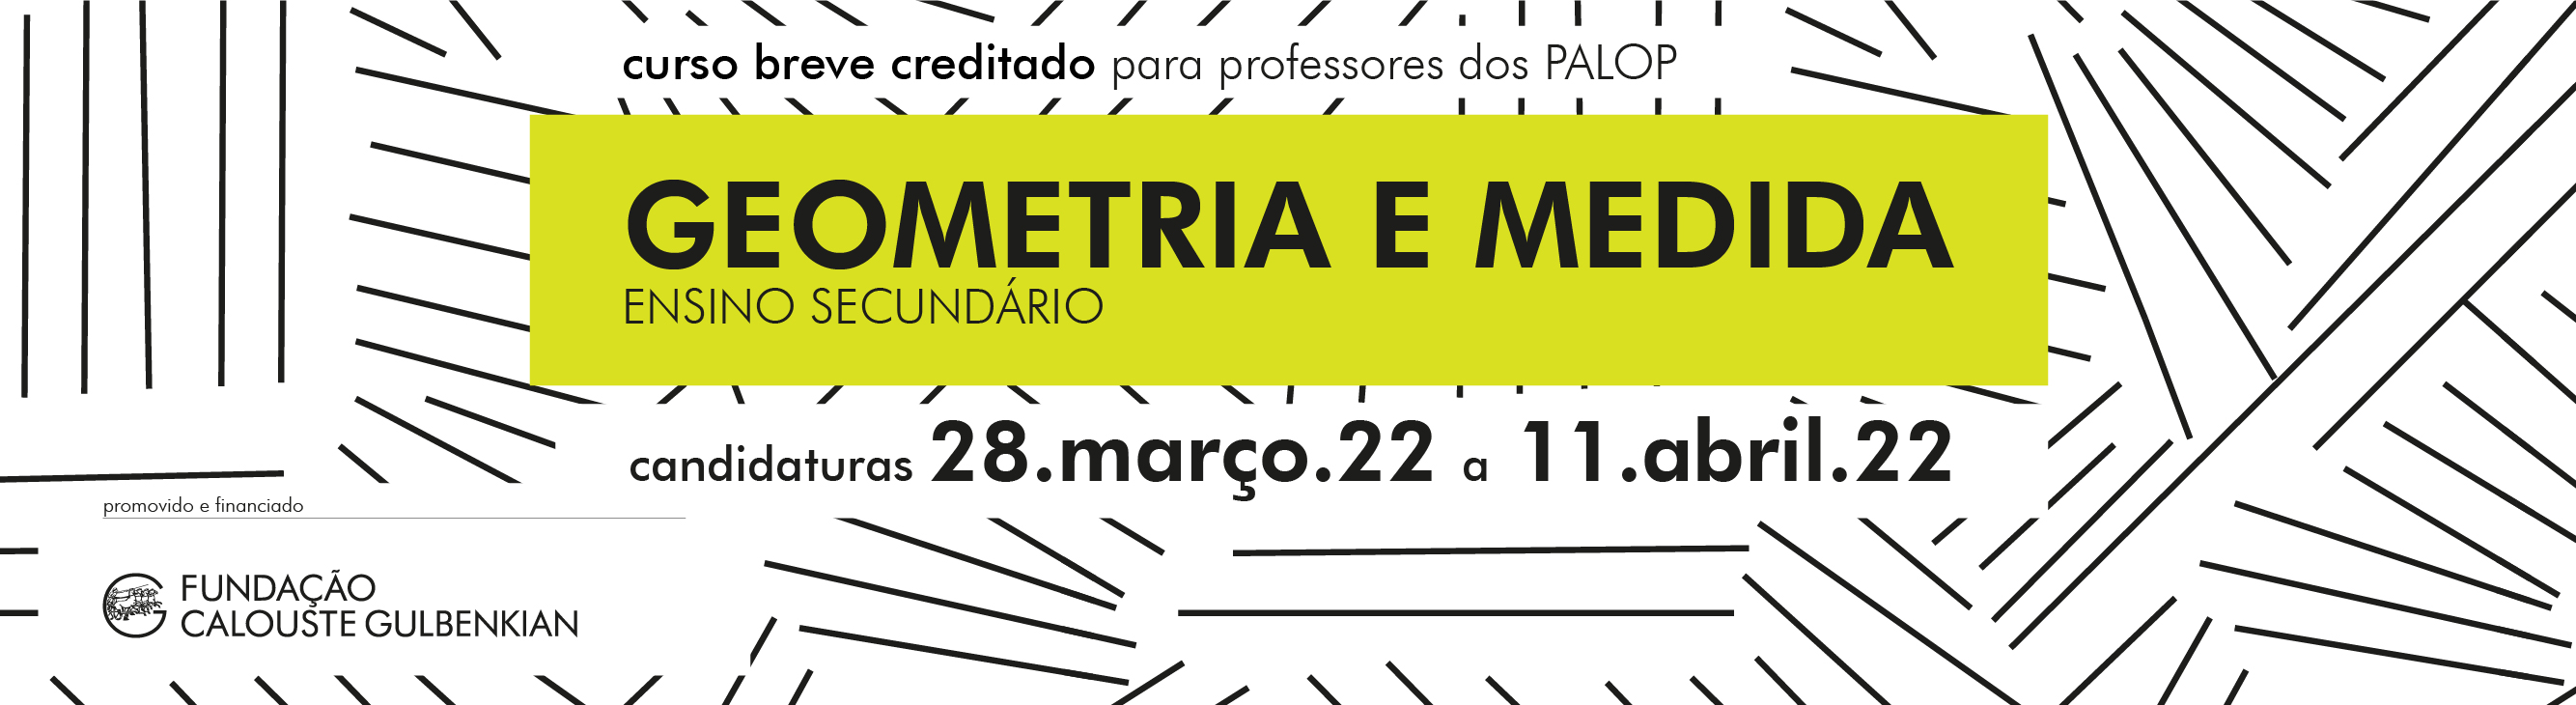 banner portal UMinho_FCG_matemática_2.jpg